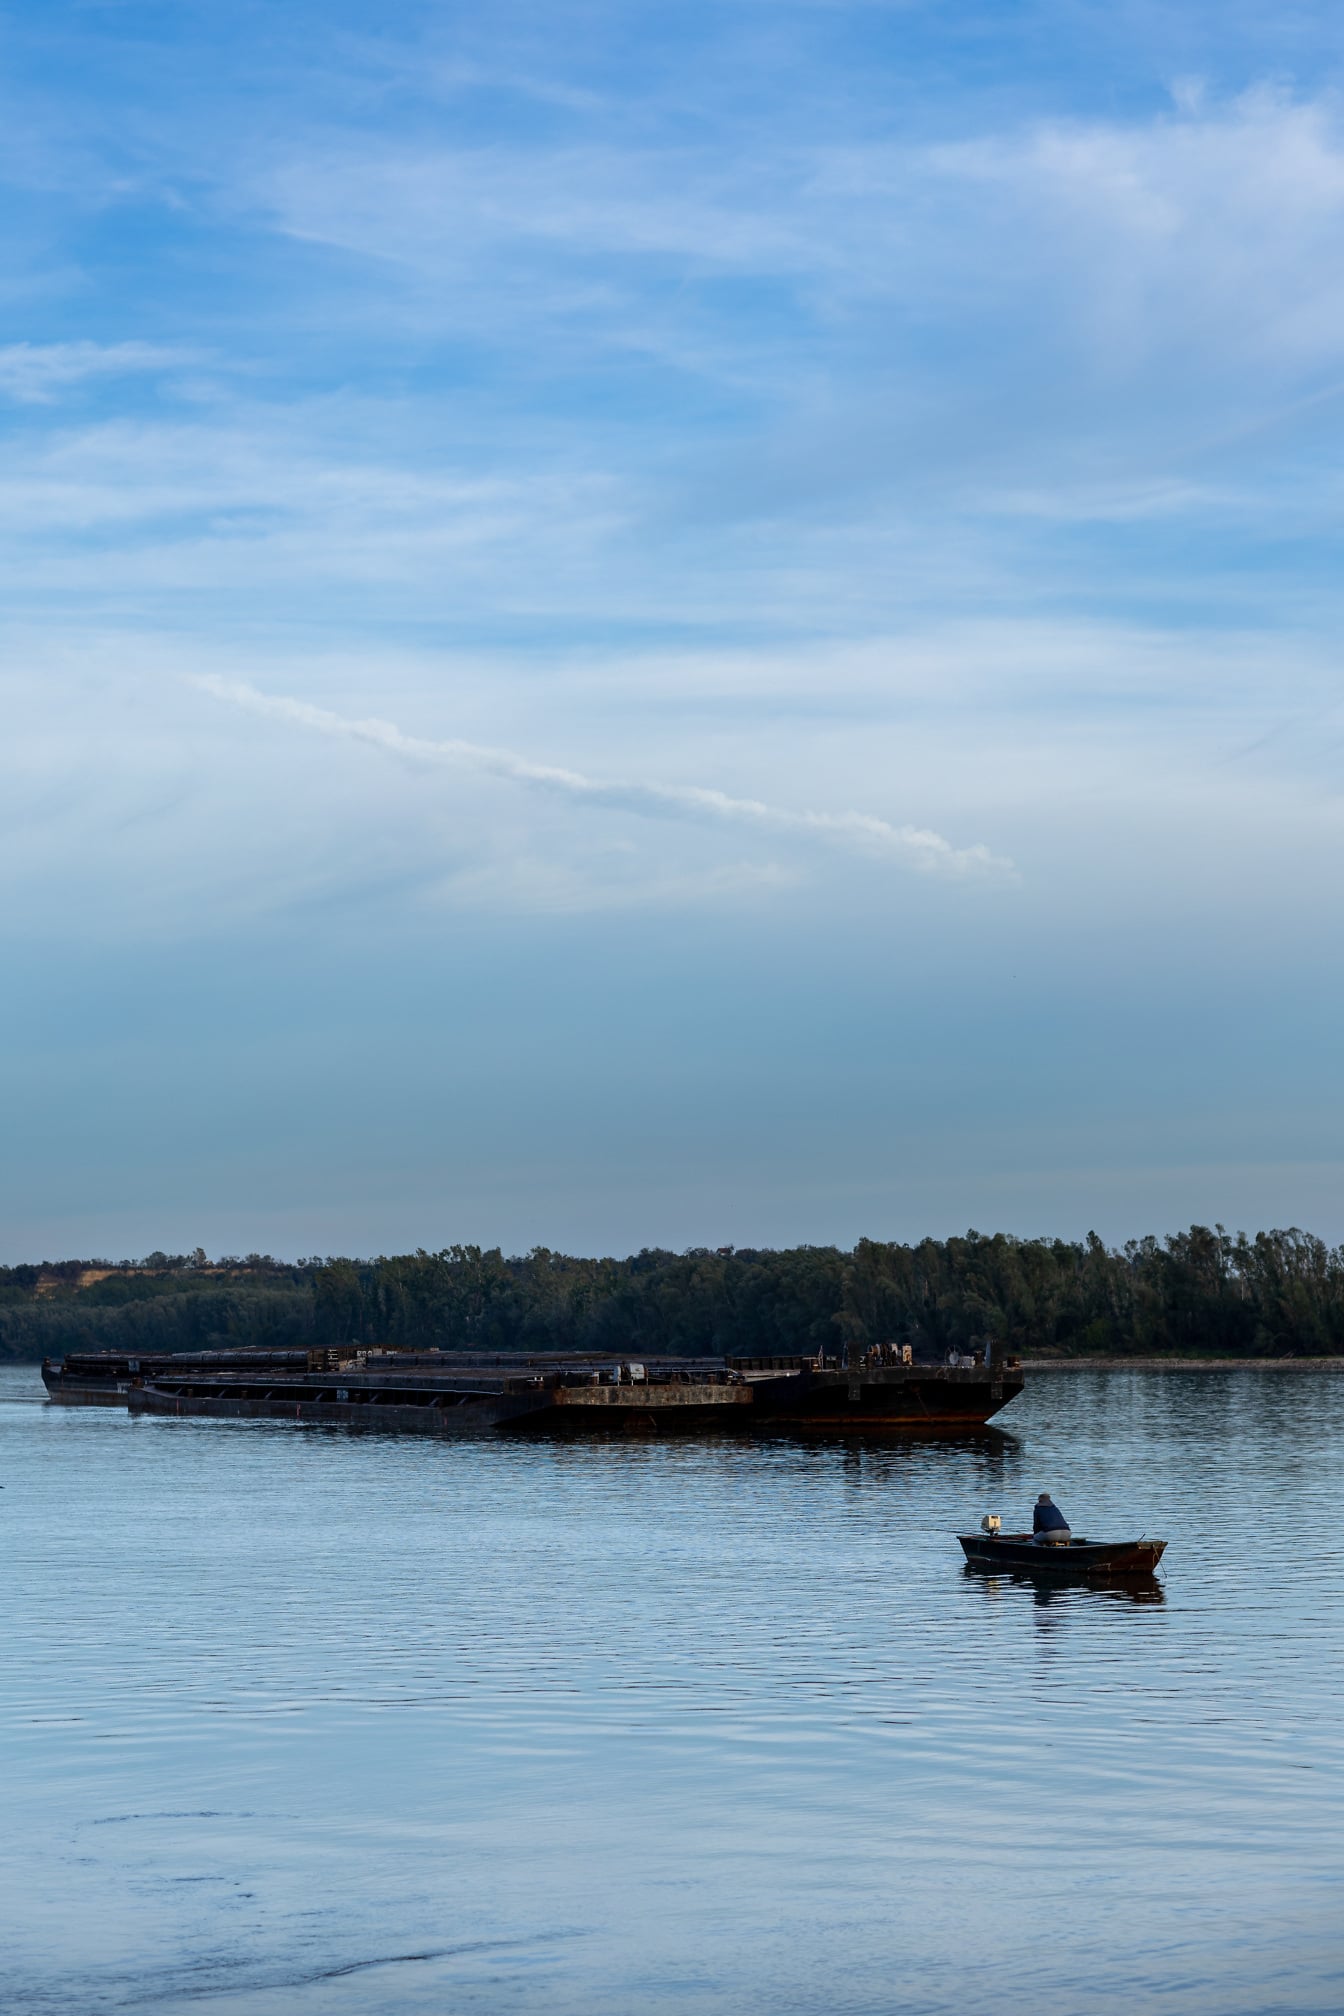 Tàu sà lan cũ rỉ sét trên sông Danube và thuyền đánh cá nhỏ